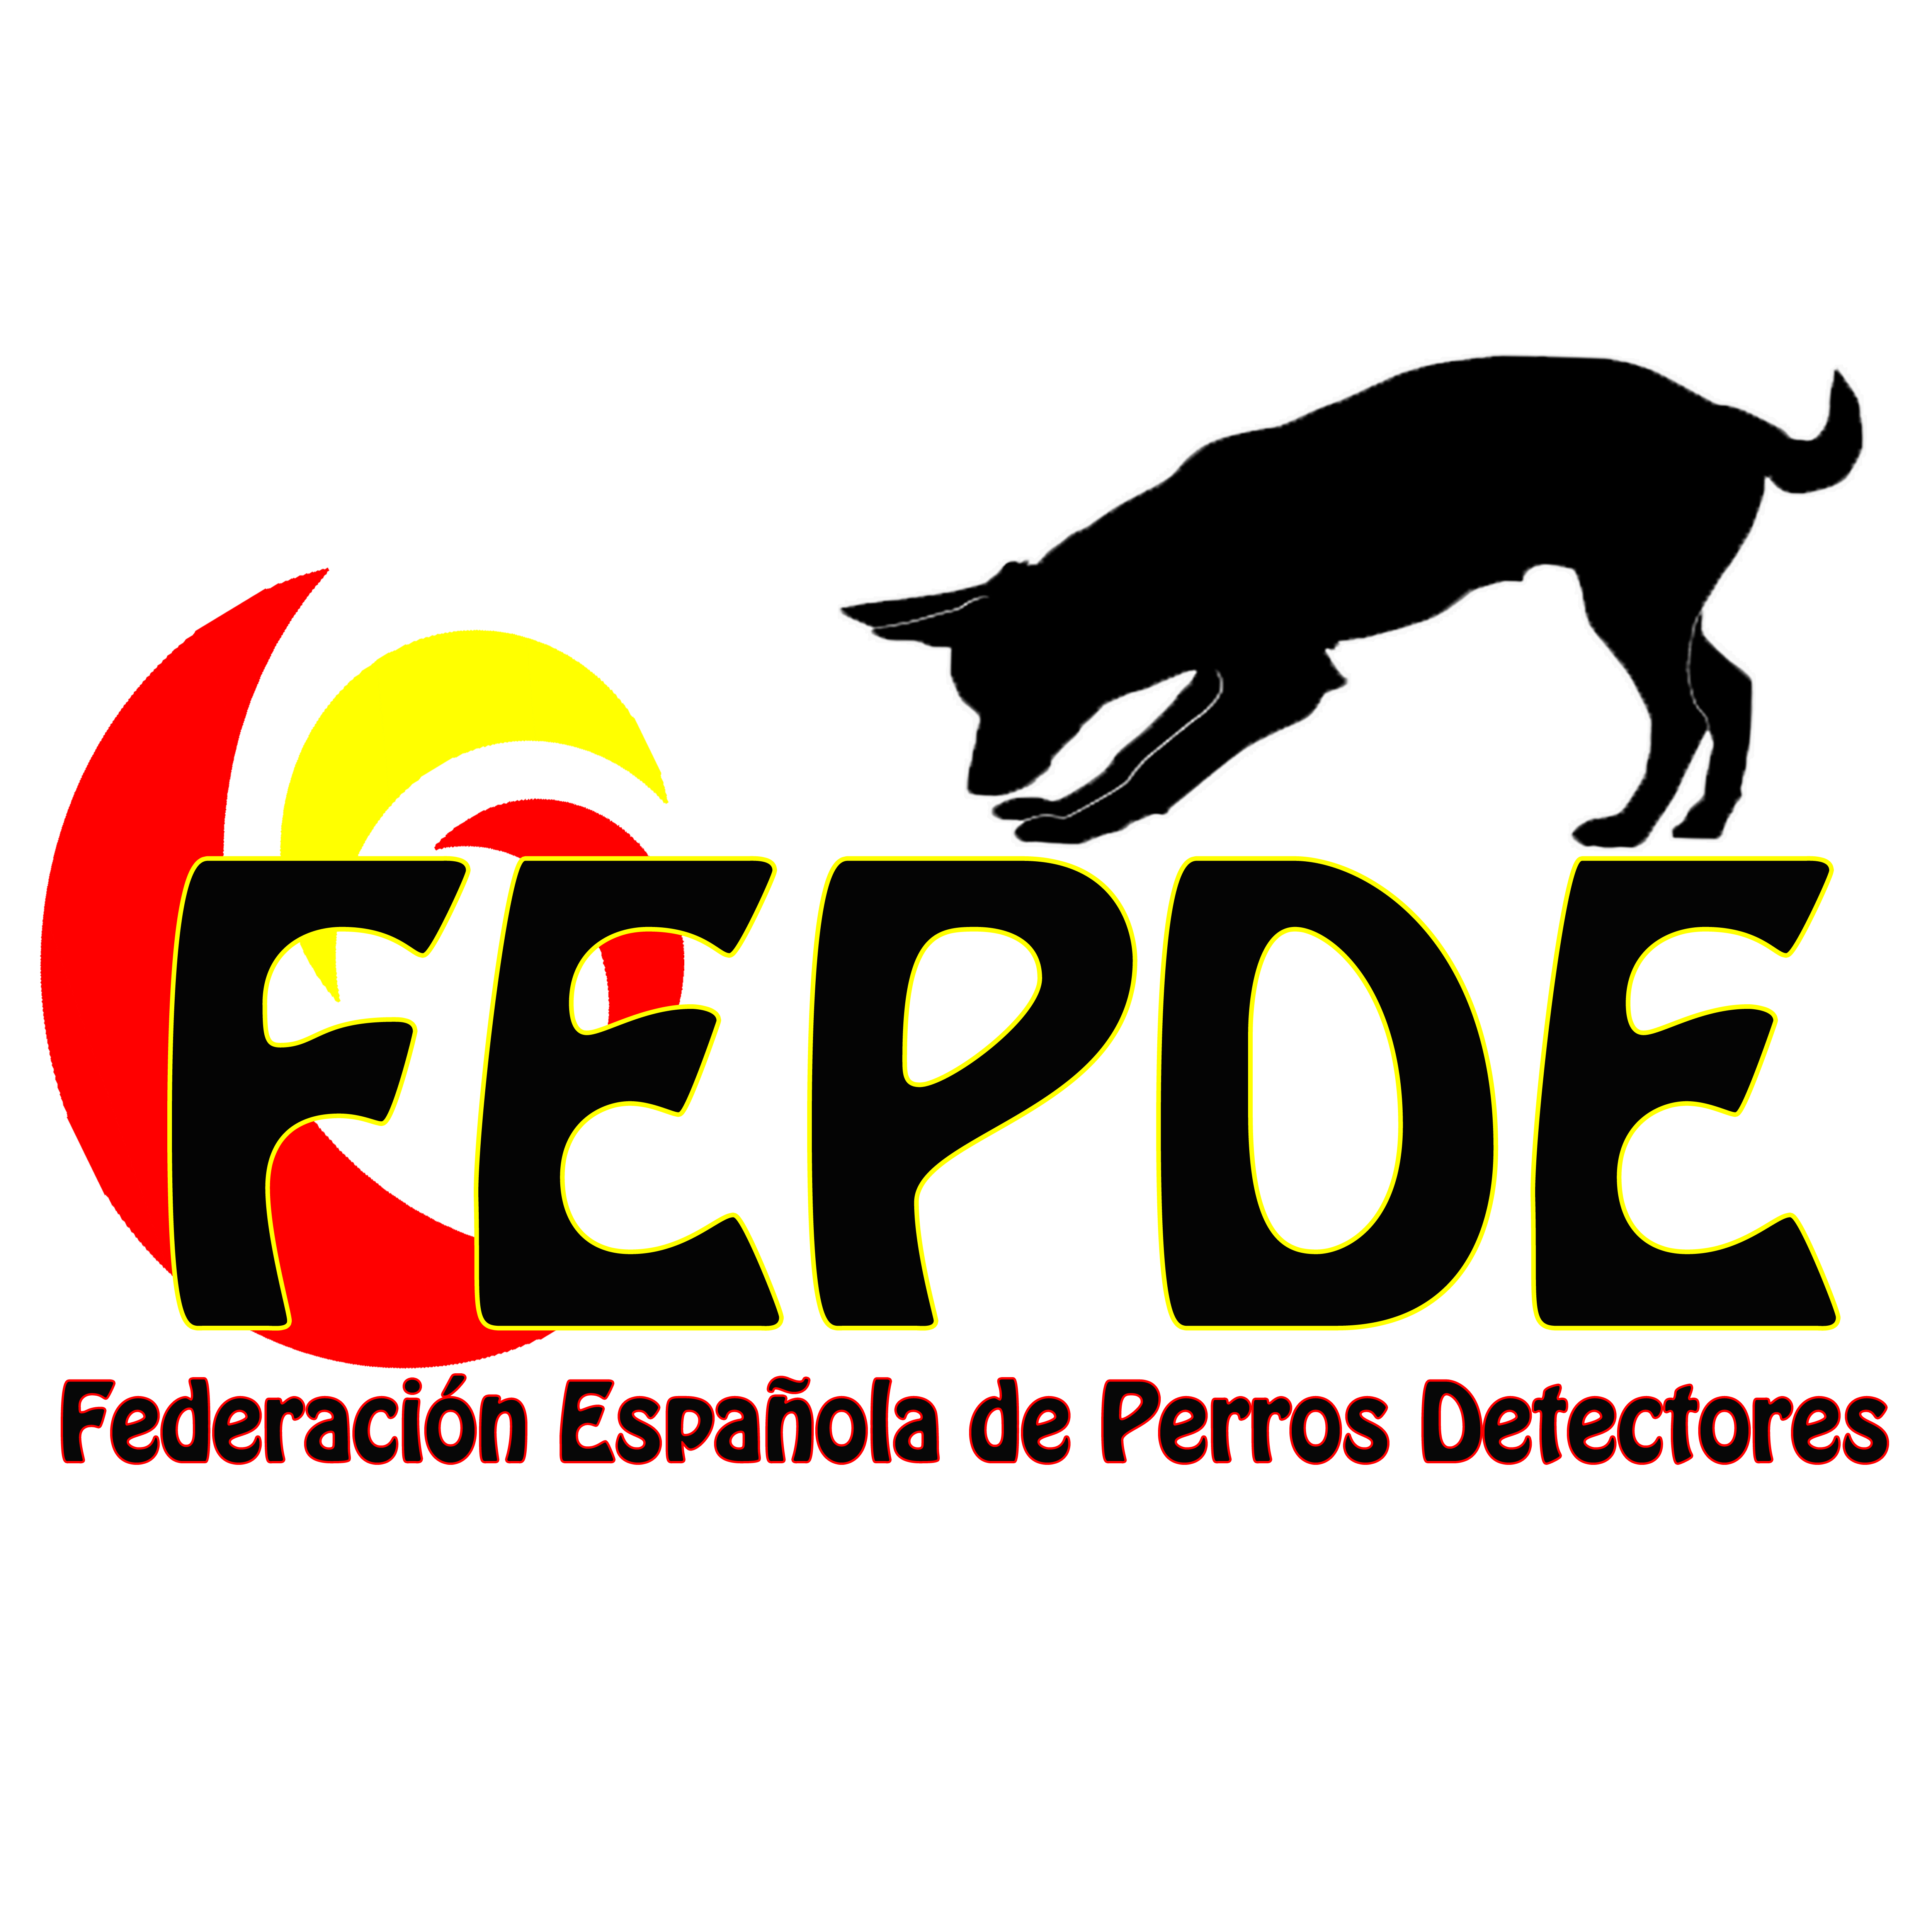 Federación Española de Perros Detectores